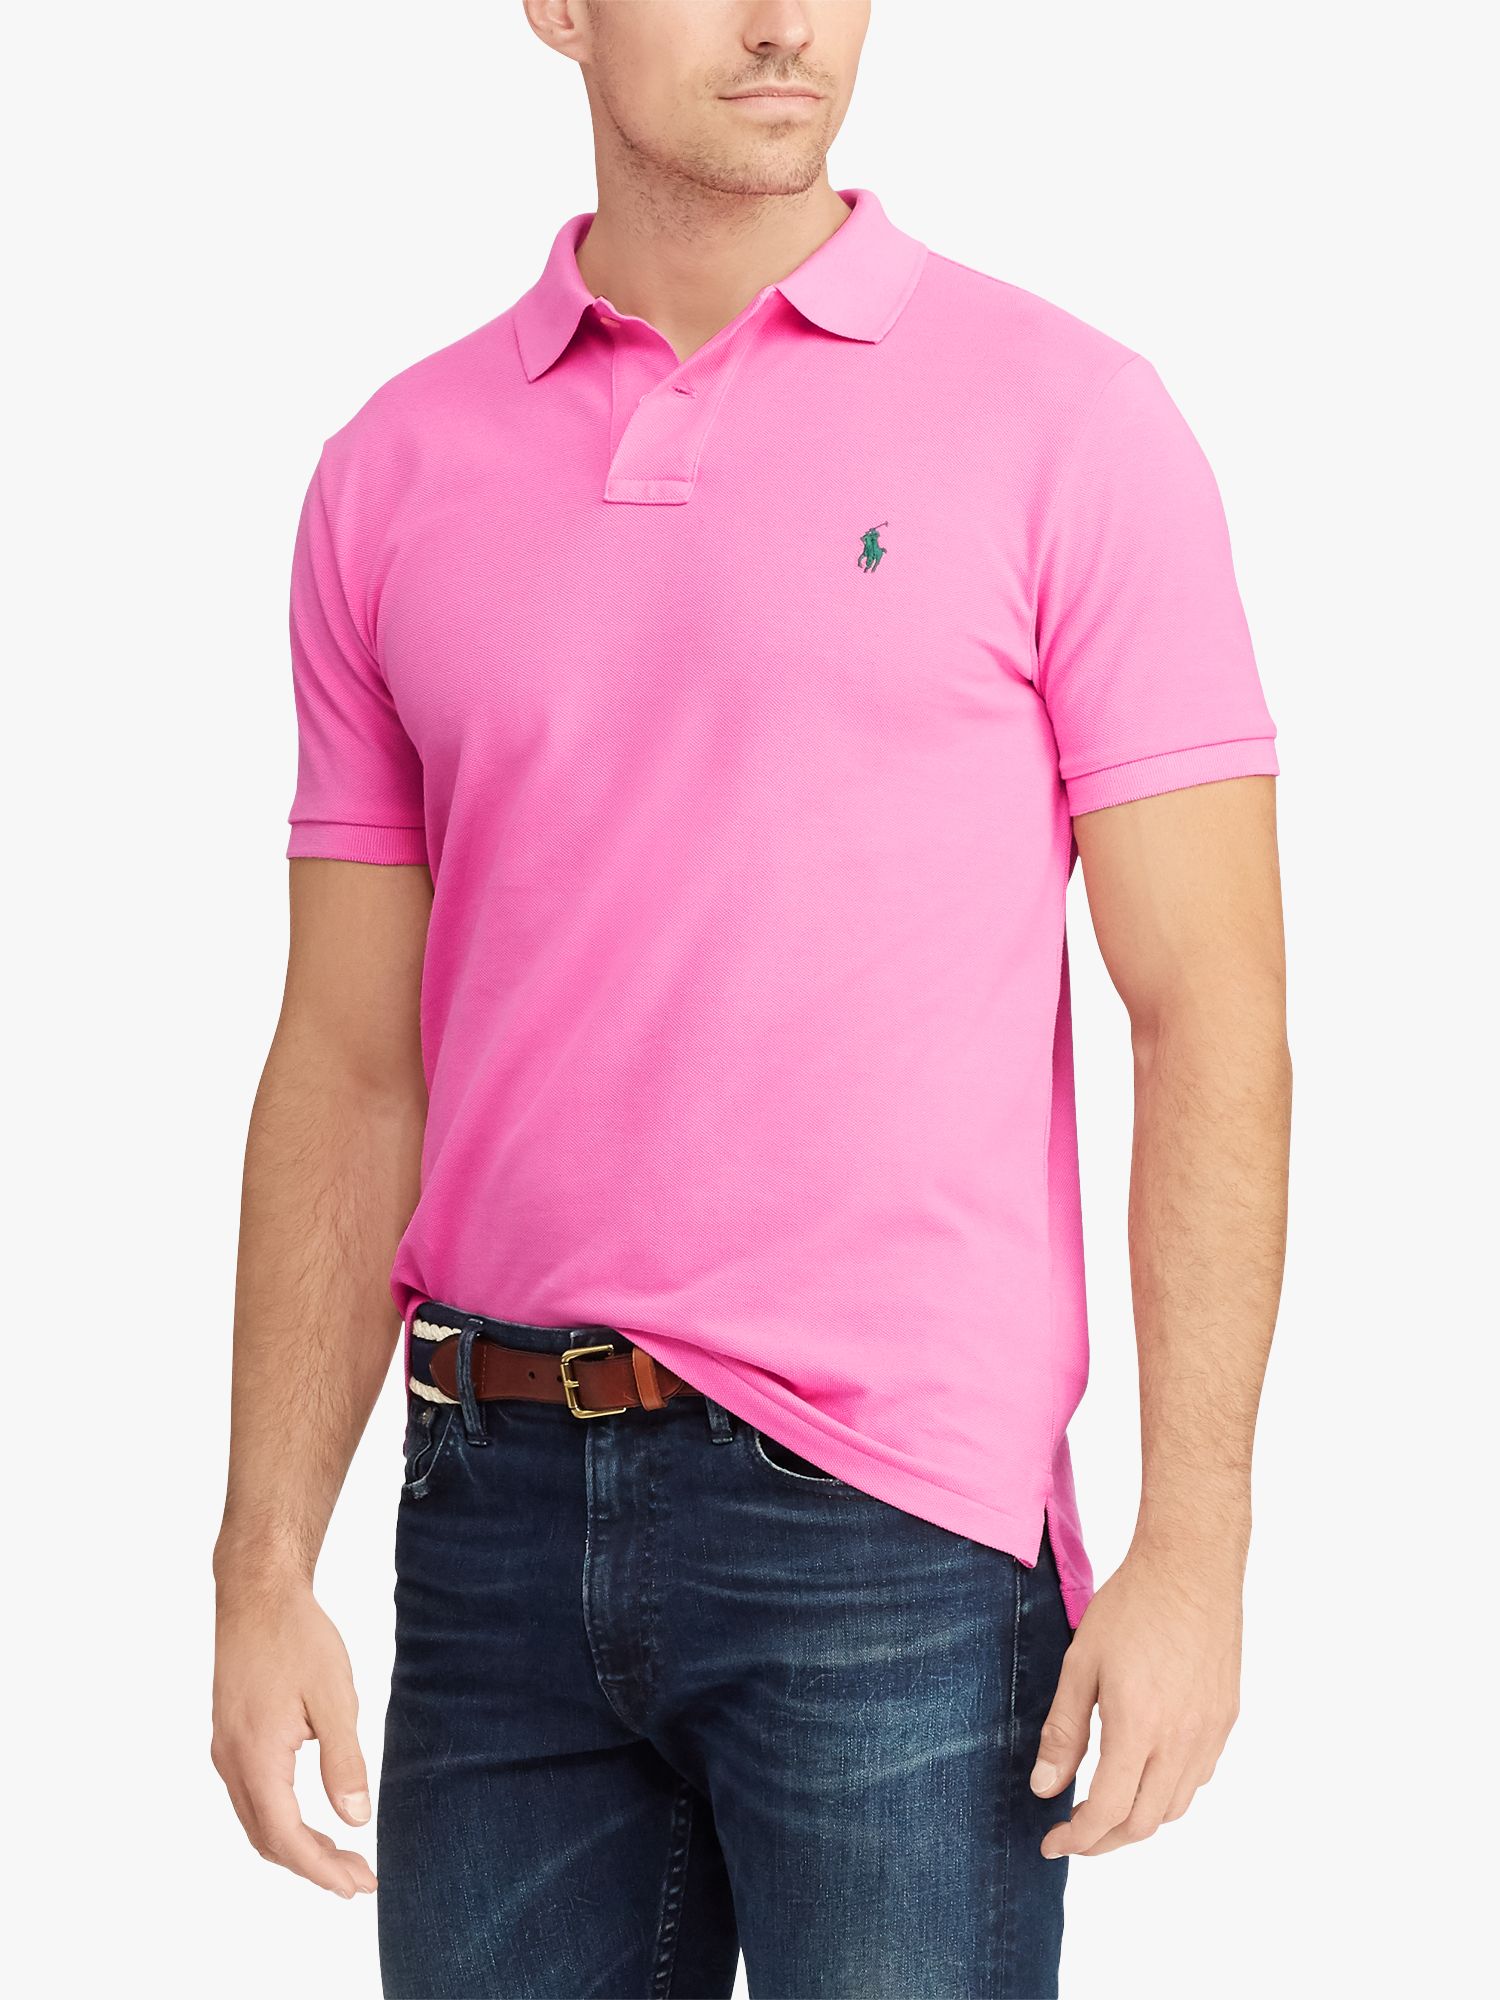 ralph lauren polo shirts pink